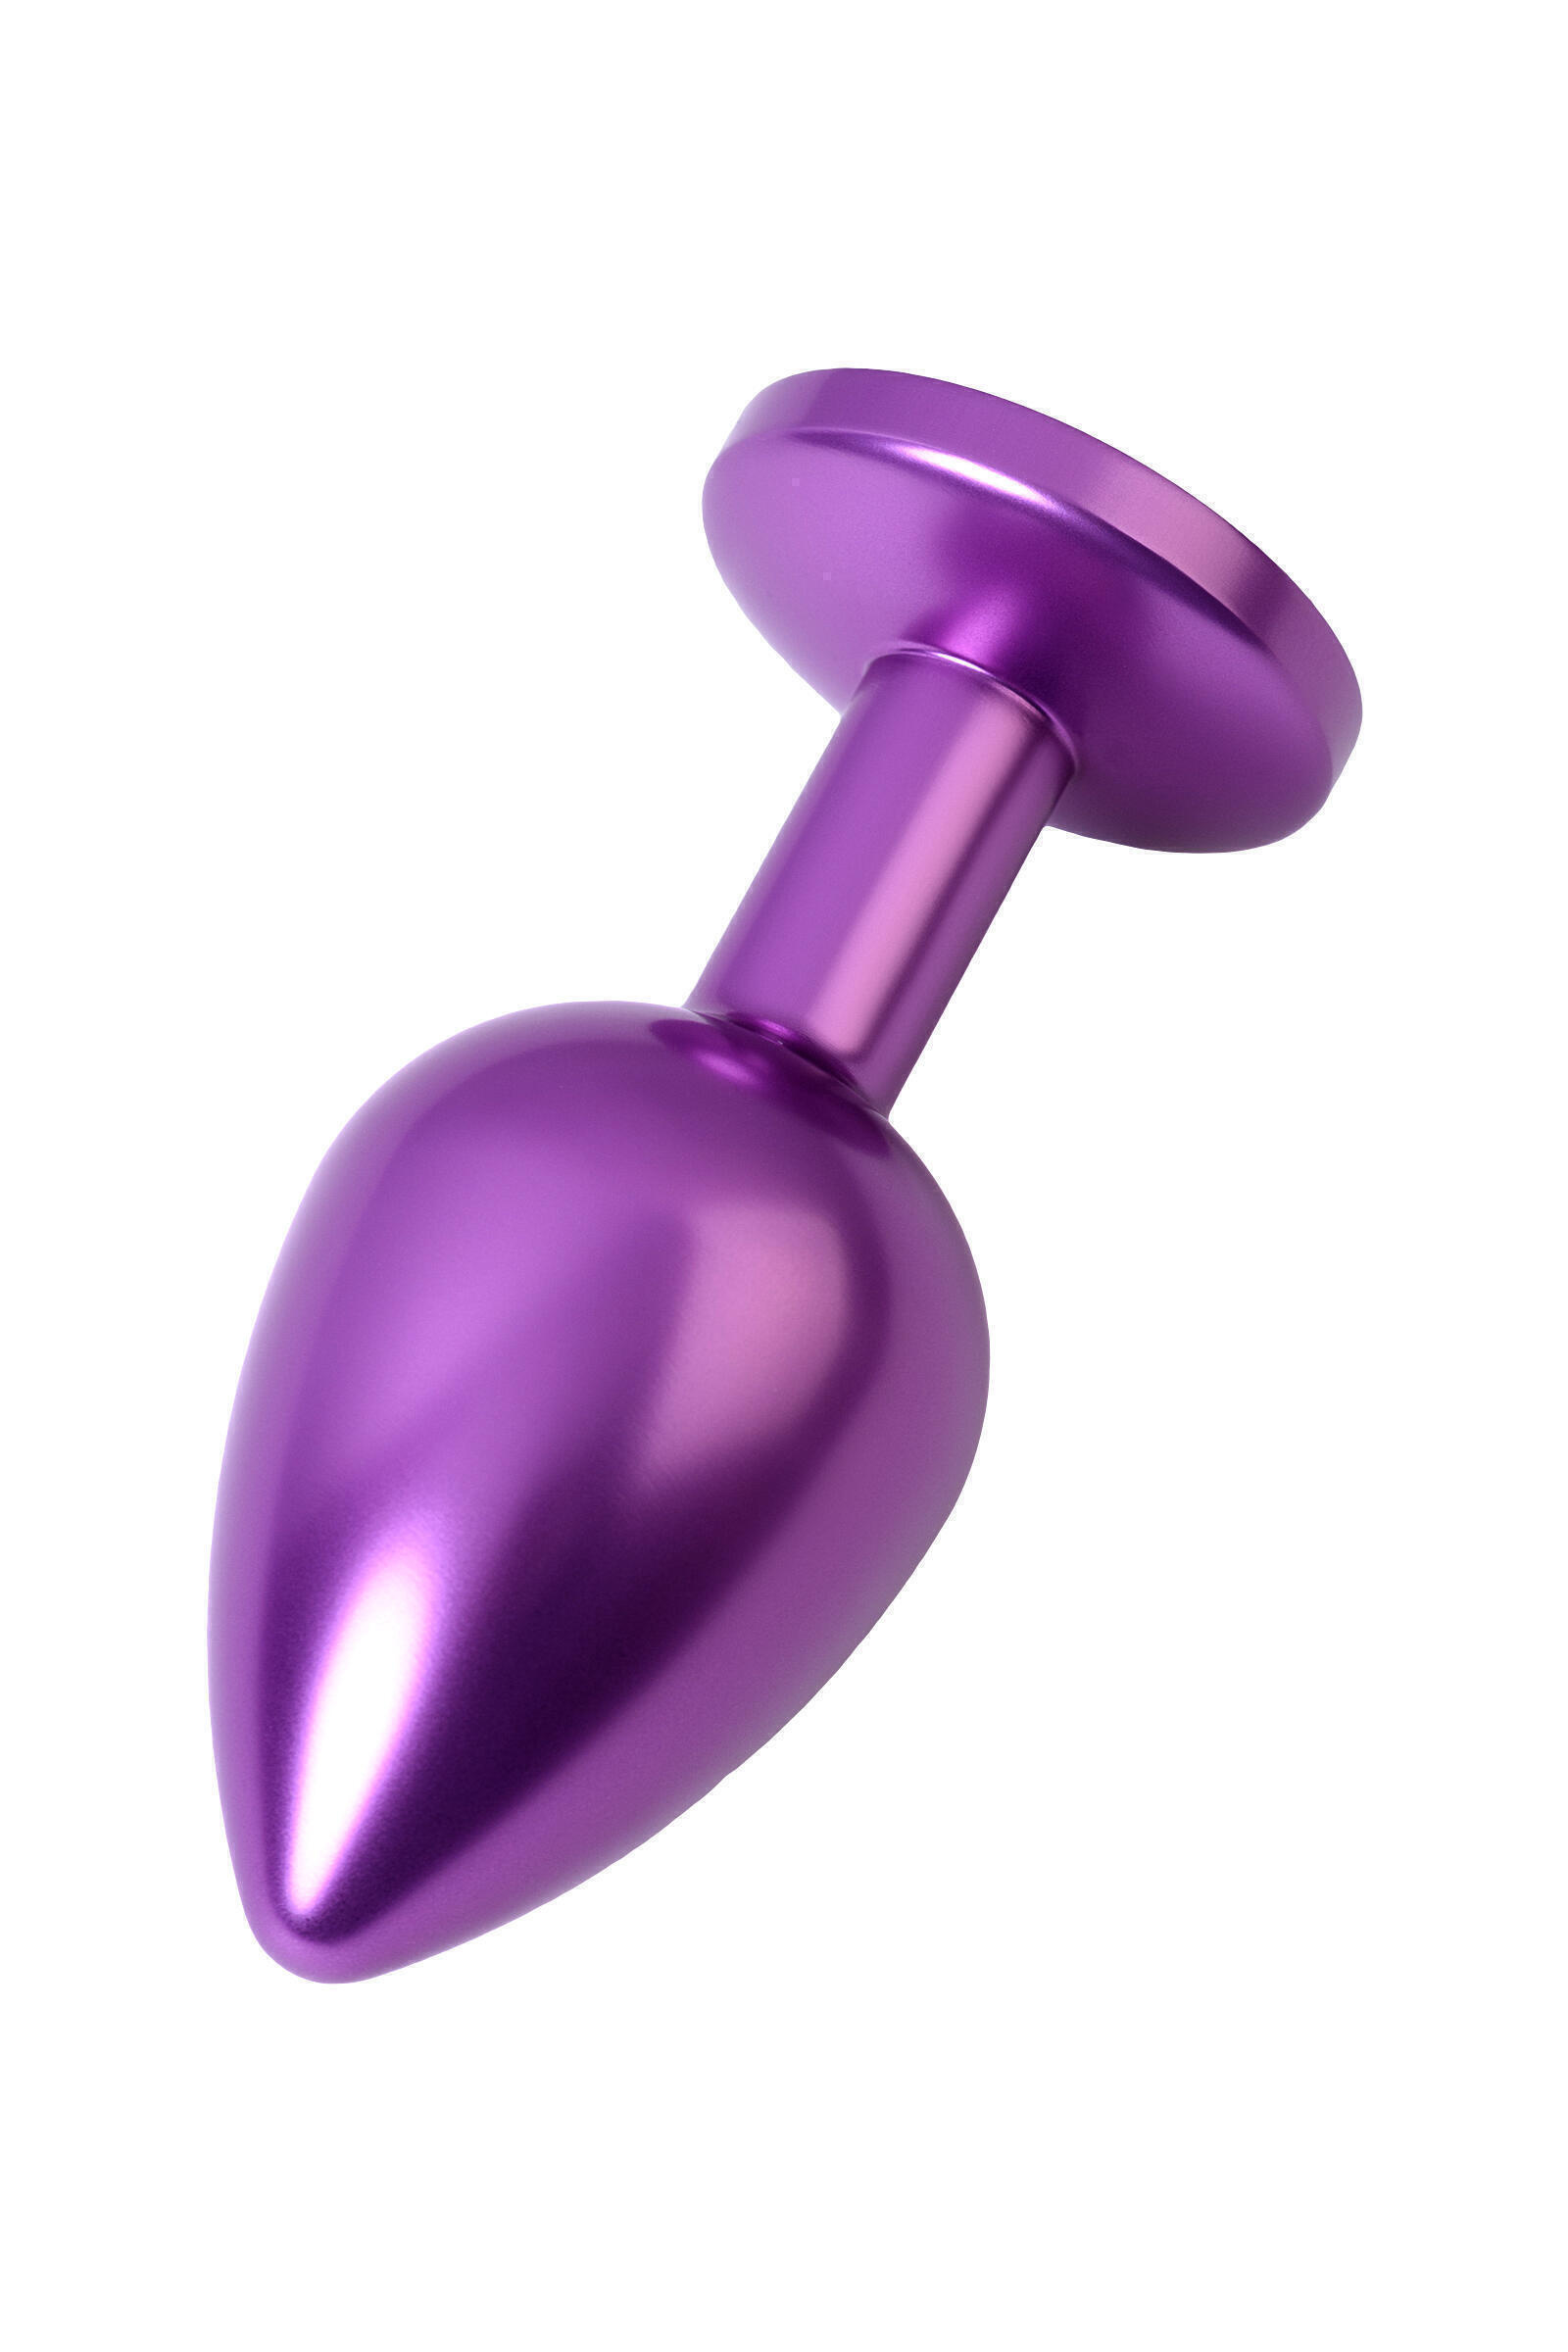 Анальная пробка Toyfa Metal с кристалом цвета аметист, 8,2 см, фиолетовый